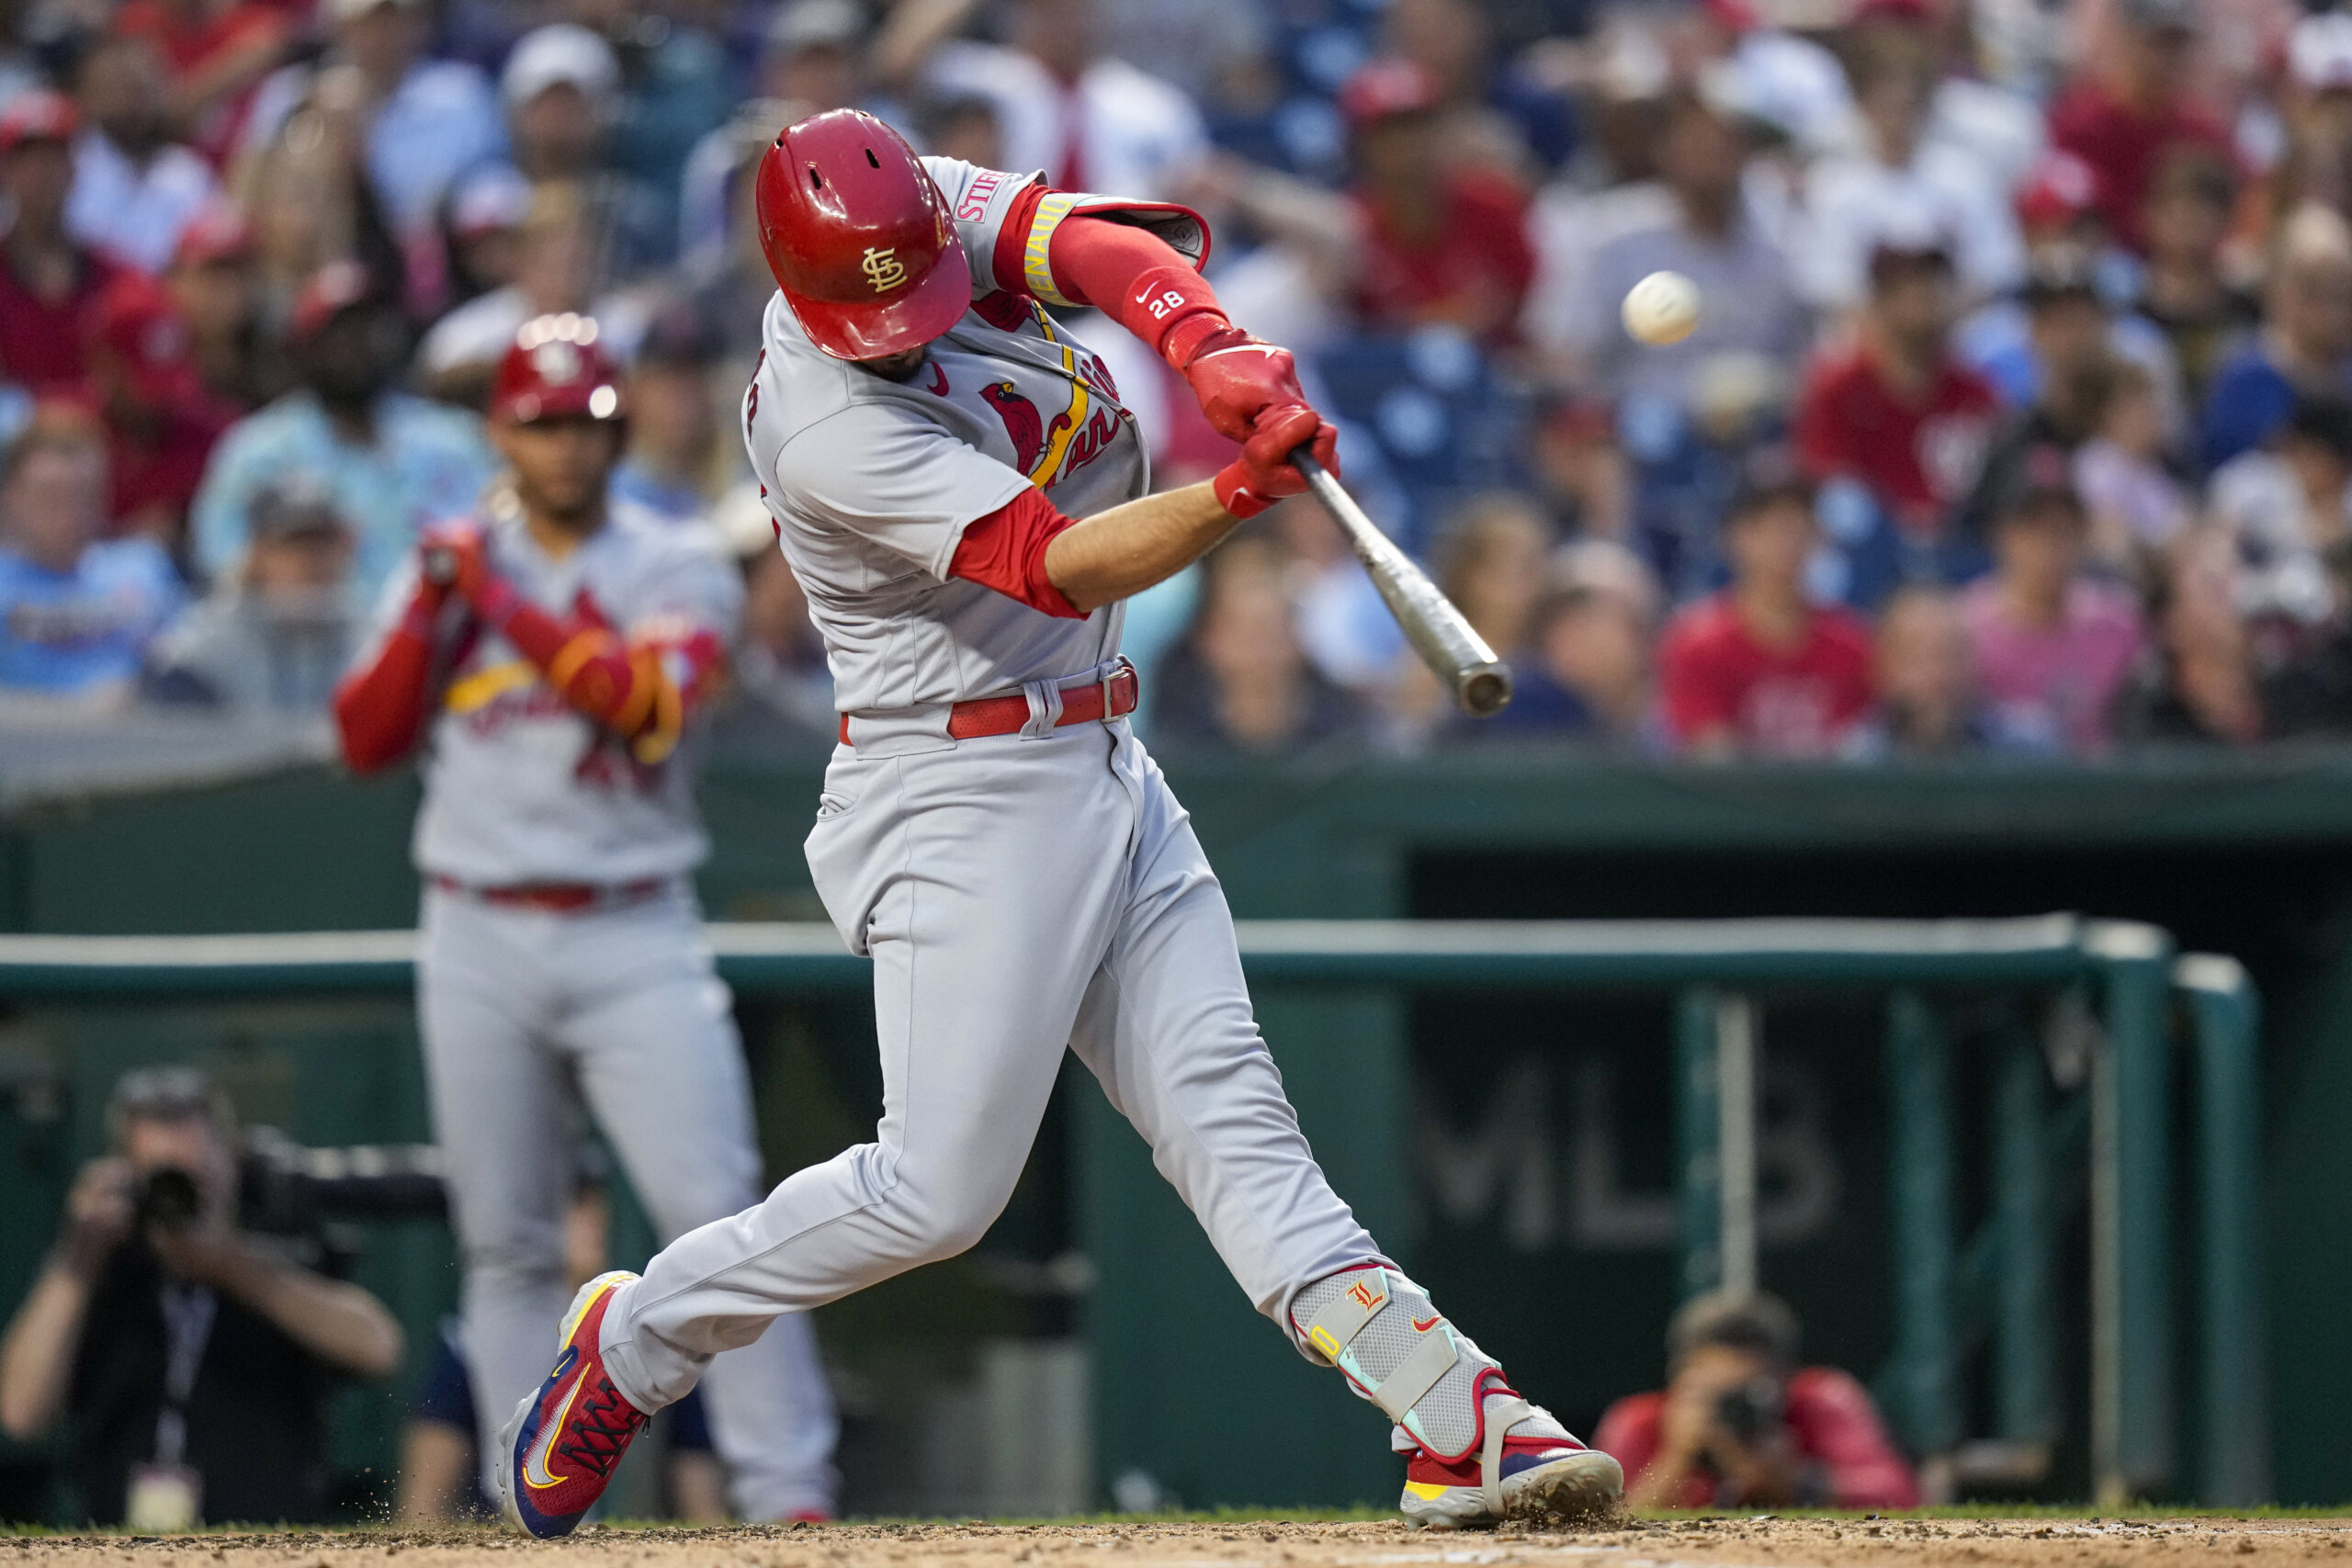 Nolan Arenado's Slump Adds to Cardinals' Woes